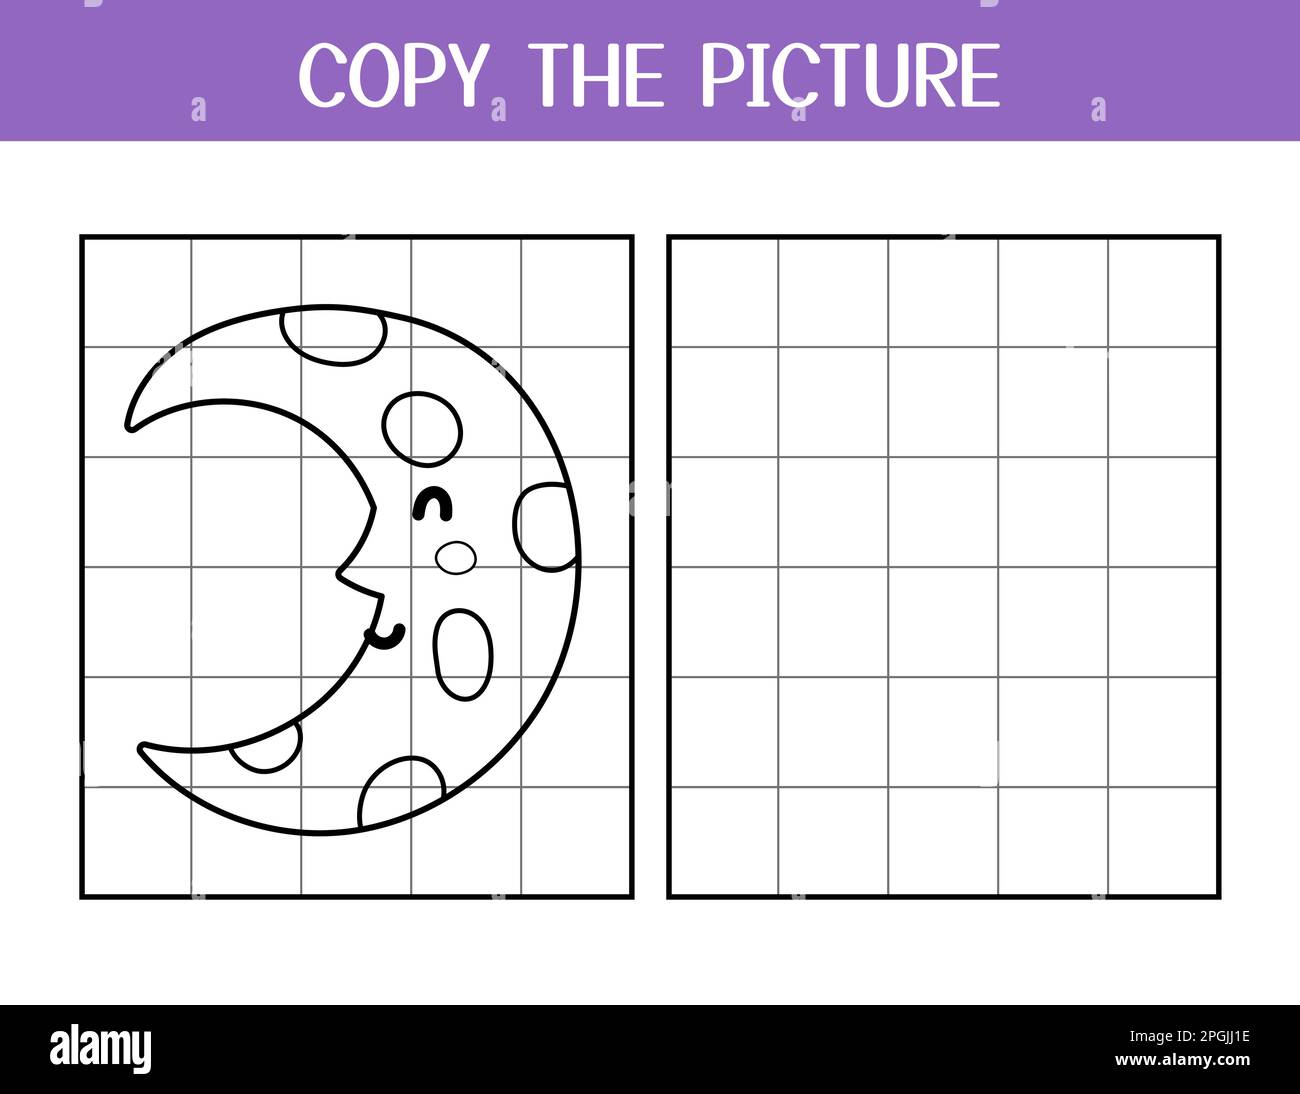 Copiez la page d'activité photo pour les enfants. Dessinez et colorer la jolie lune Illustration de Vecteur